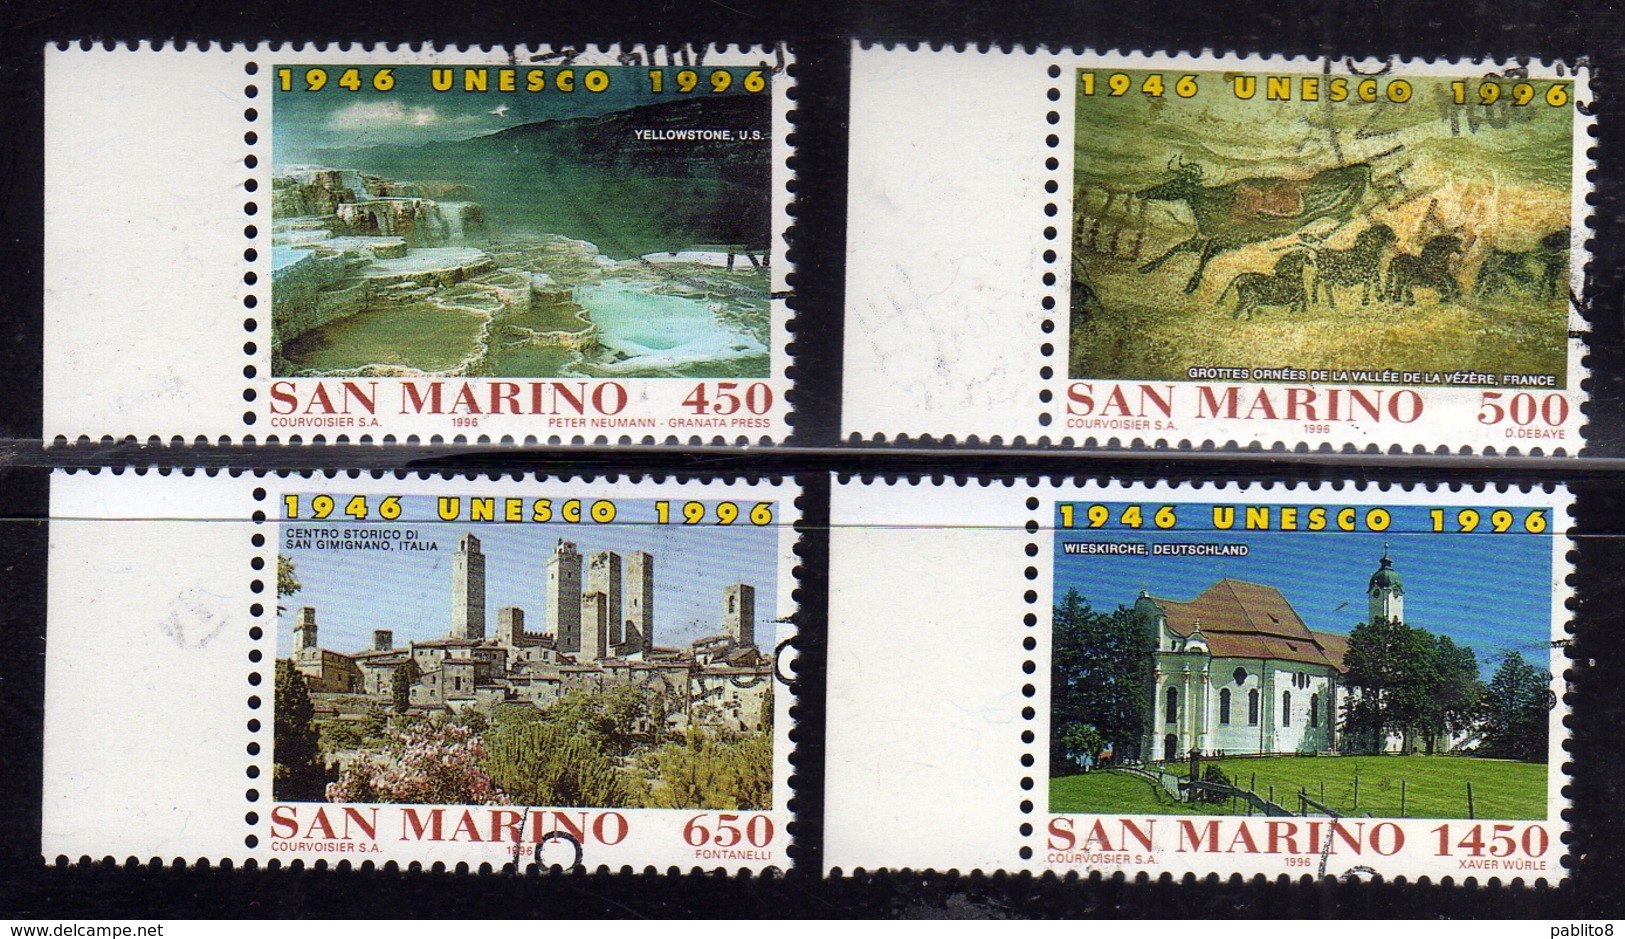 REPUBBLICA DI SAN MARINO 1996 UNESCO 50° ANNIVERSARIO ANNIVERSARY SERIE COMPLETA COMPLETE SET USATA USED OBLITERE' - Used Stamps